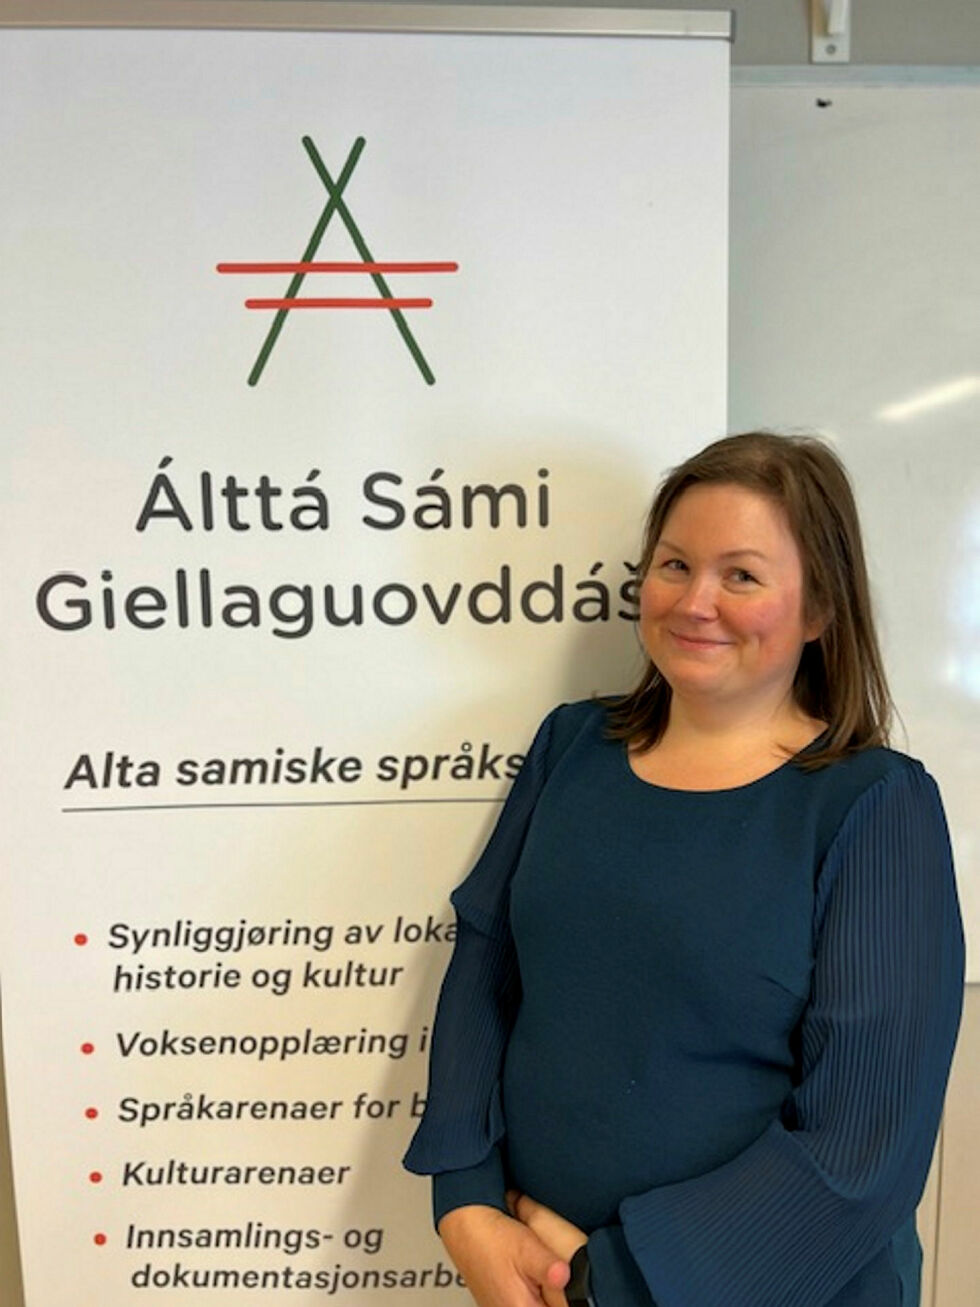 Ny prosjektlederen Inger Kristina Gaup-Kaseka på språk- og kultursenteret Lávgu i Alta inviterer til spennende samlinger for barn med samisk som andre- og tredjespråk.
 Foto: Lávgu